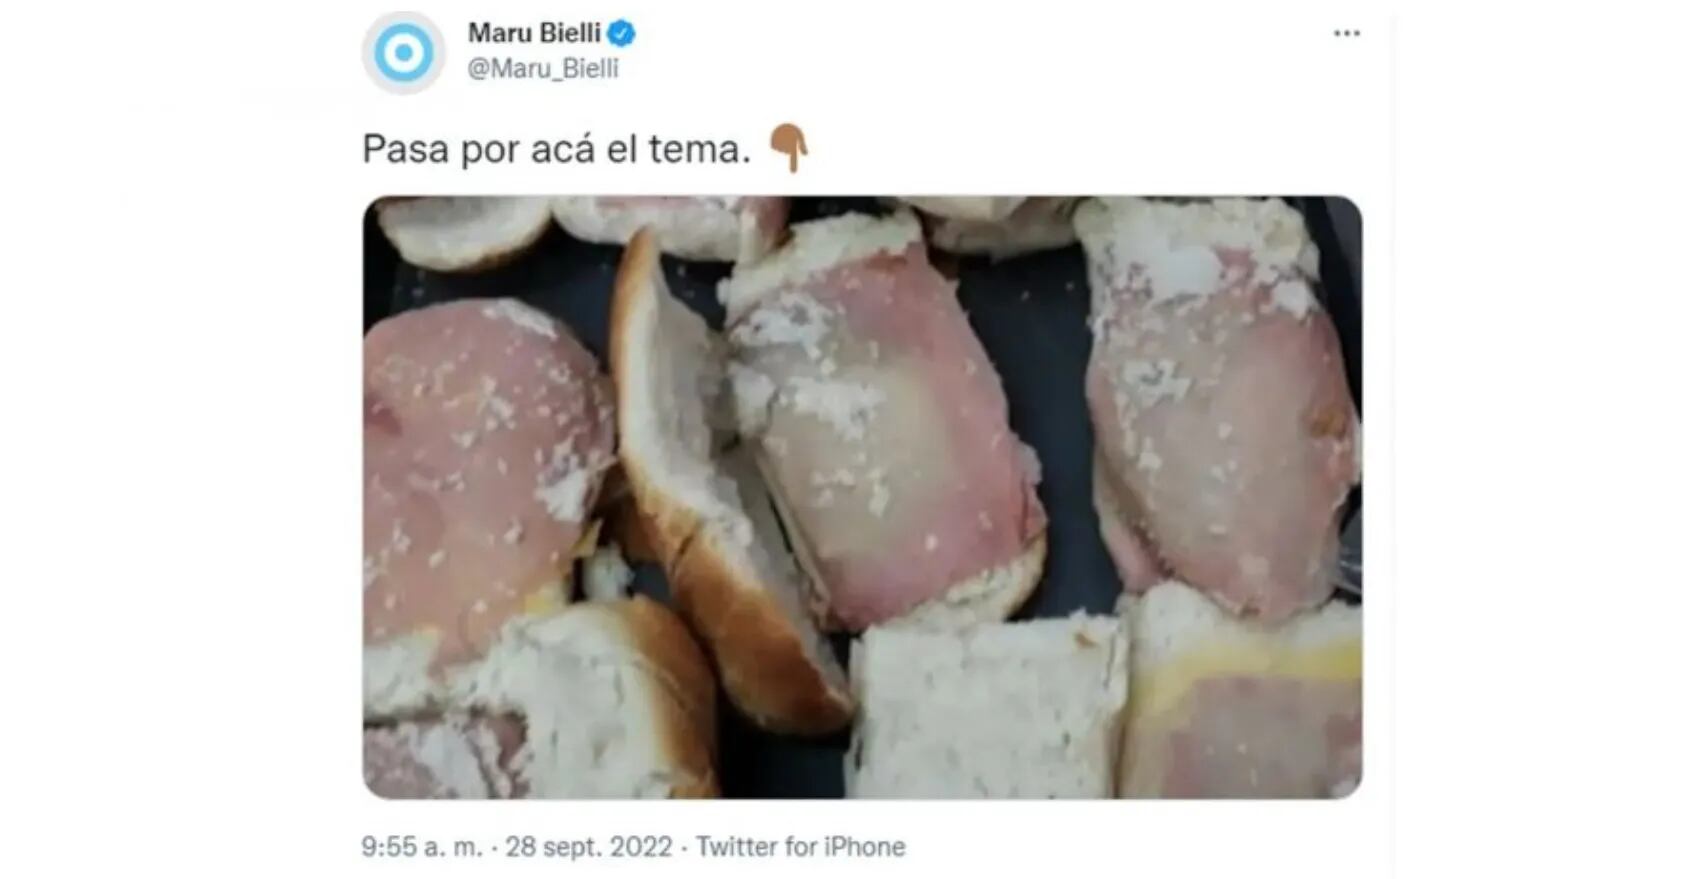 Jorge Lanata apuntó contra María Bielli, por la falsa imagen de los sándwiches “en mal estado”: “La vencida era la foto”